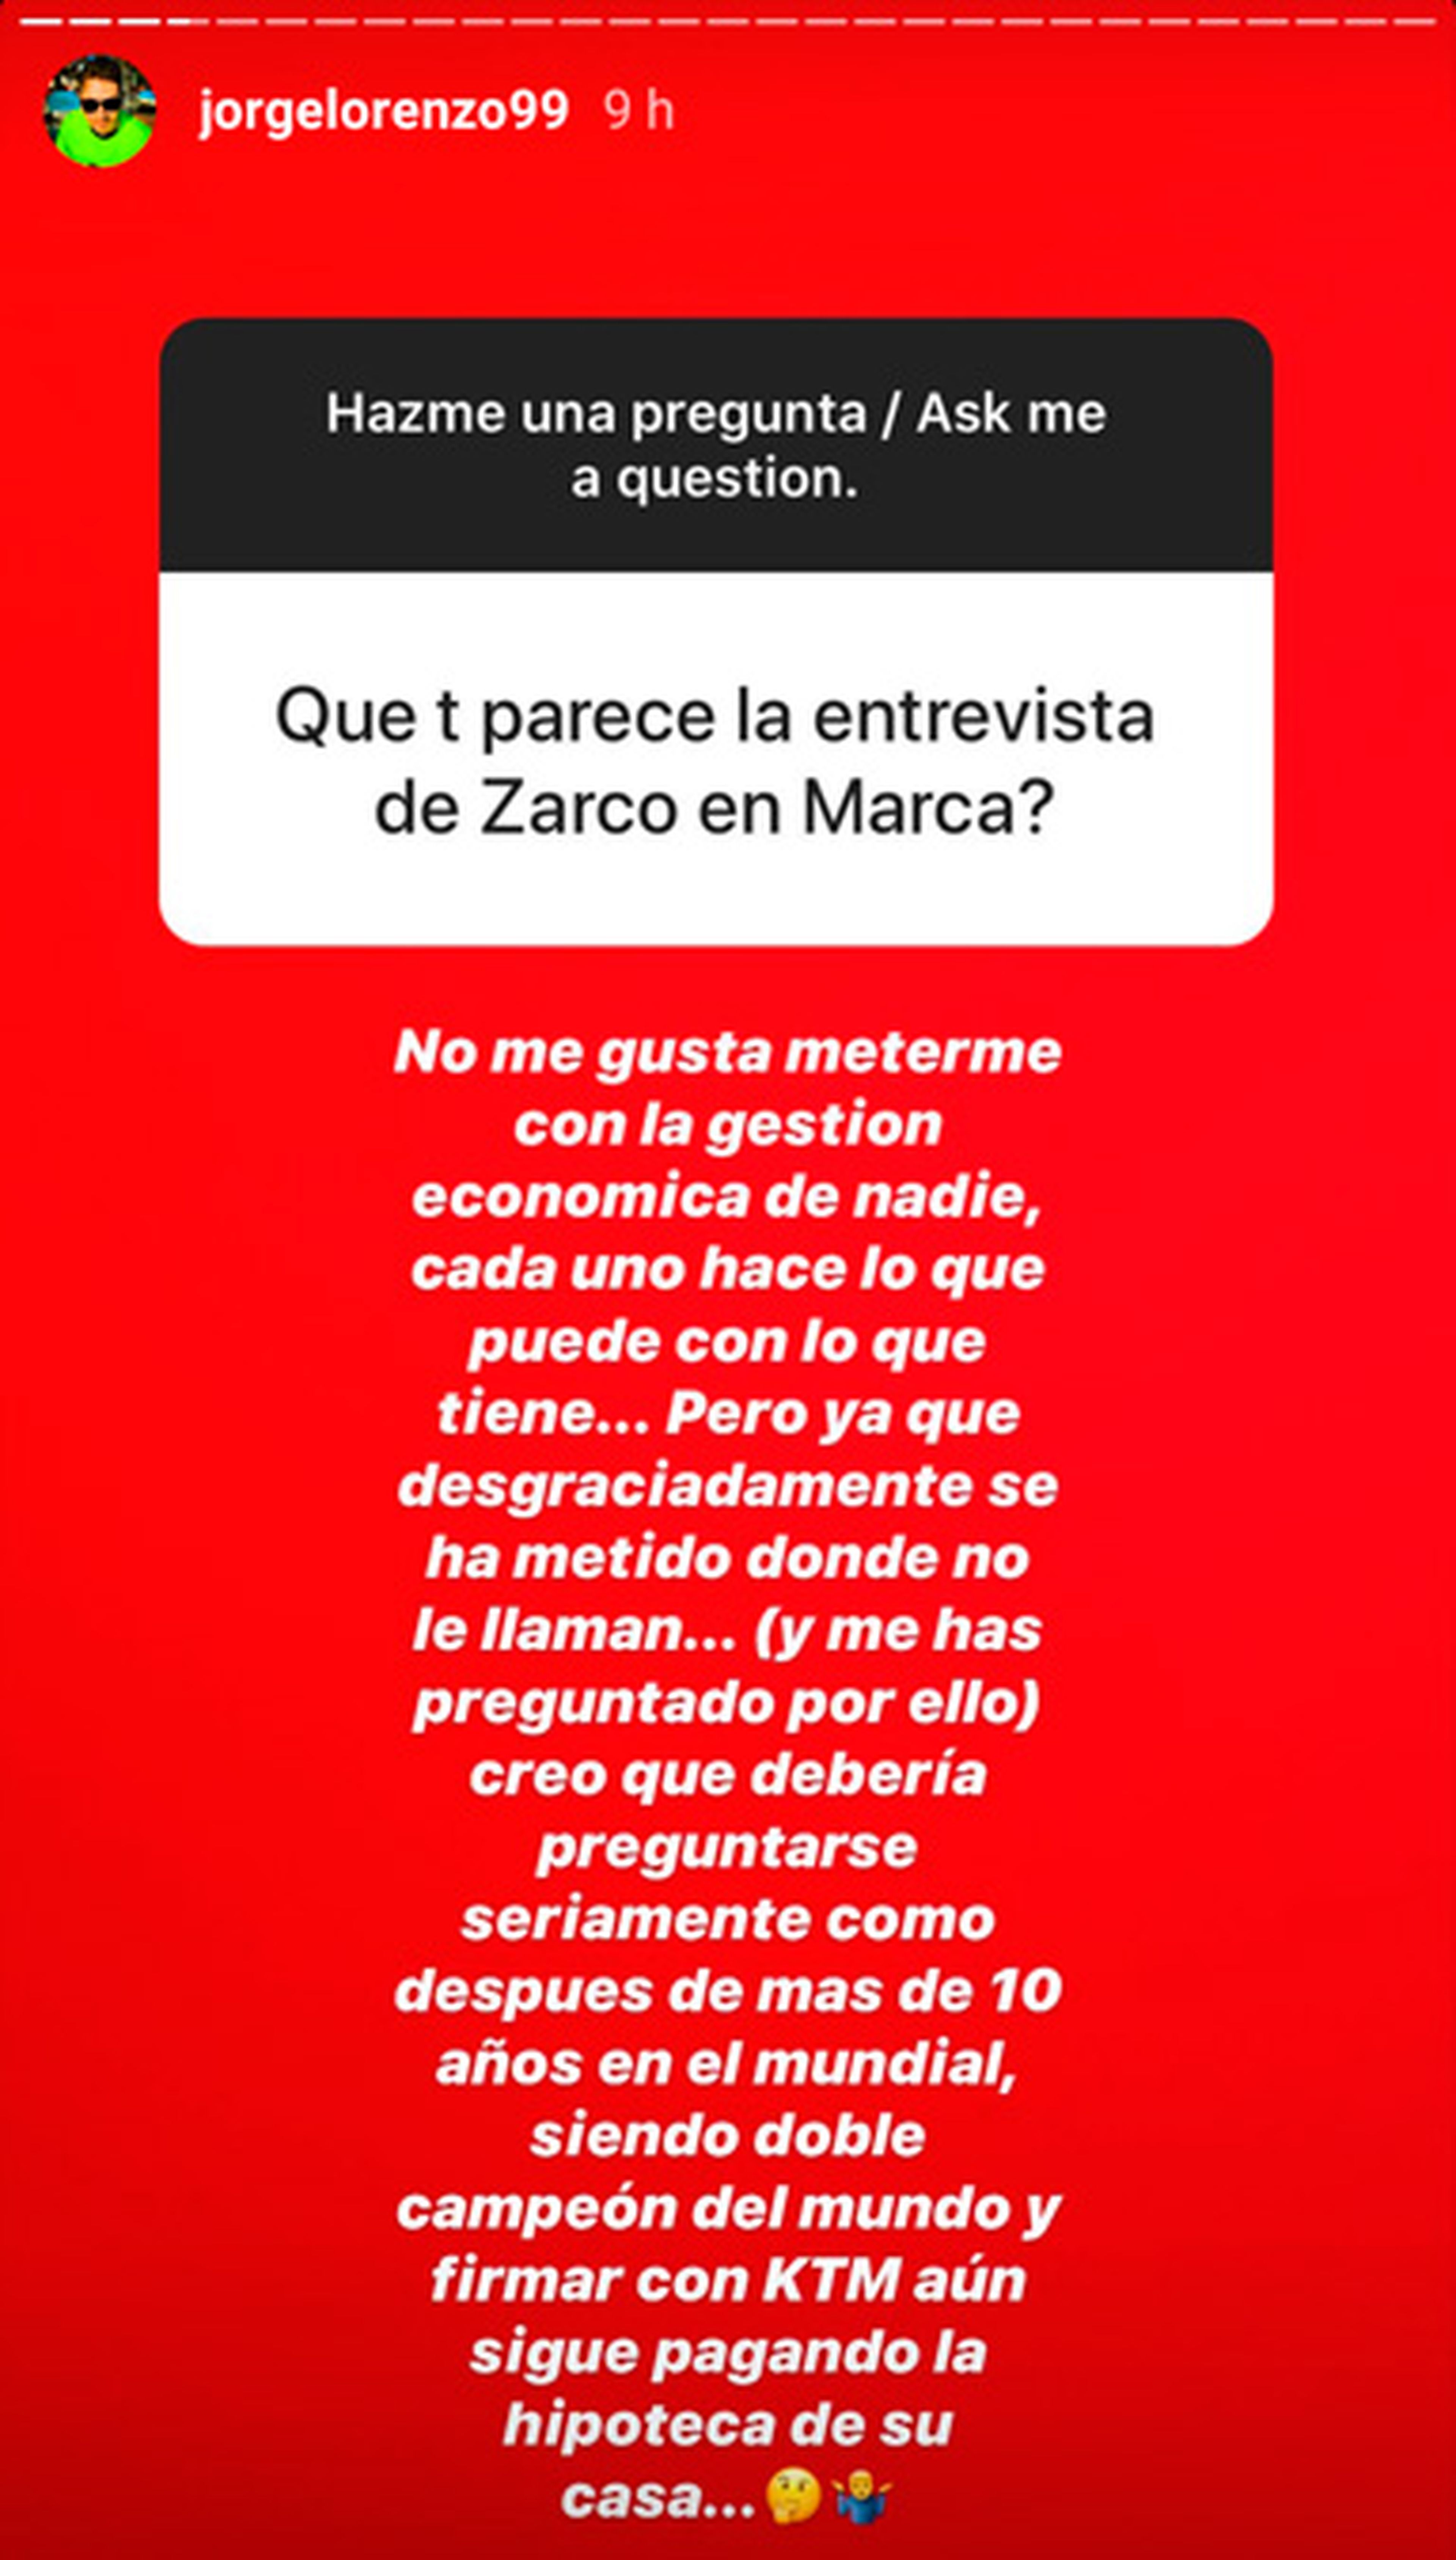 Jorge Lorenzo mensaje instagram Zarco